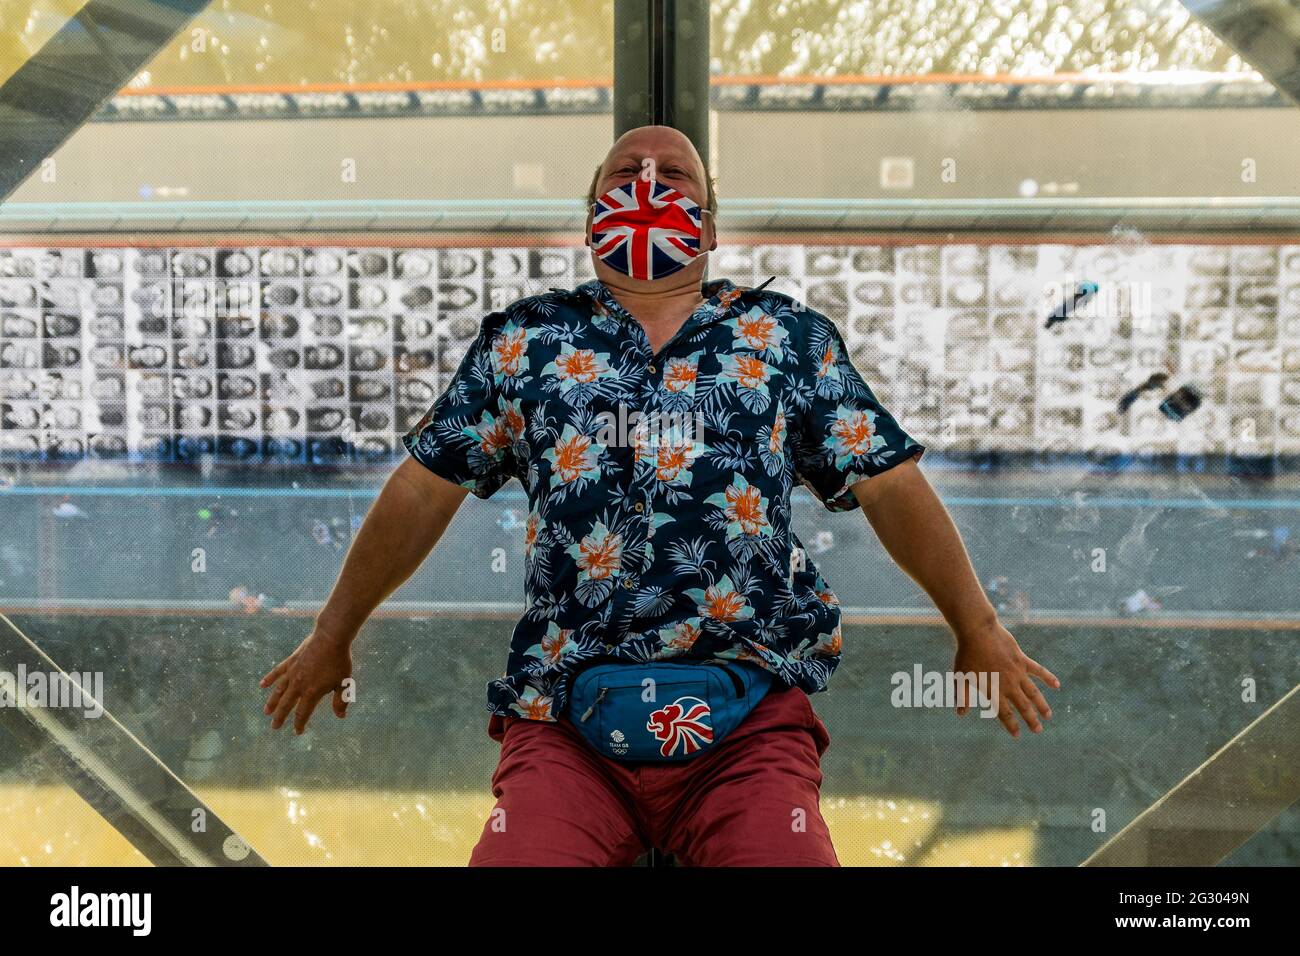 Londra, Regno Unito. 13 giu 2021. I turisti si trovano sul pavimento della piattaforma di osservazione per guardare se stessi nel soffitto a specchio - il ponte della torre, come è incollato con più di 3,000 fotografie di ritratto in bianco e nero in occasione del Campionato di calcio UEFA EURO 2020. Credit: Guy Bell/Alamy Live News Foto Stock